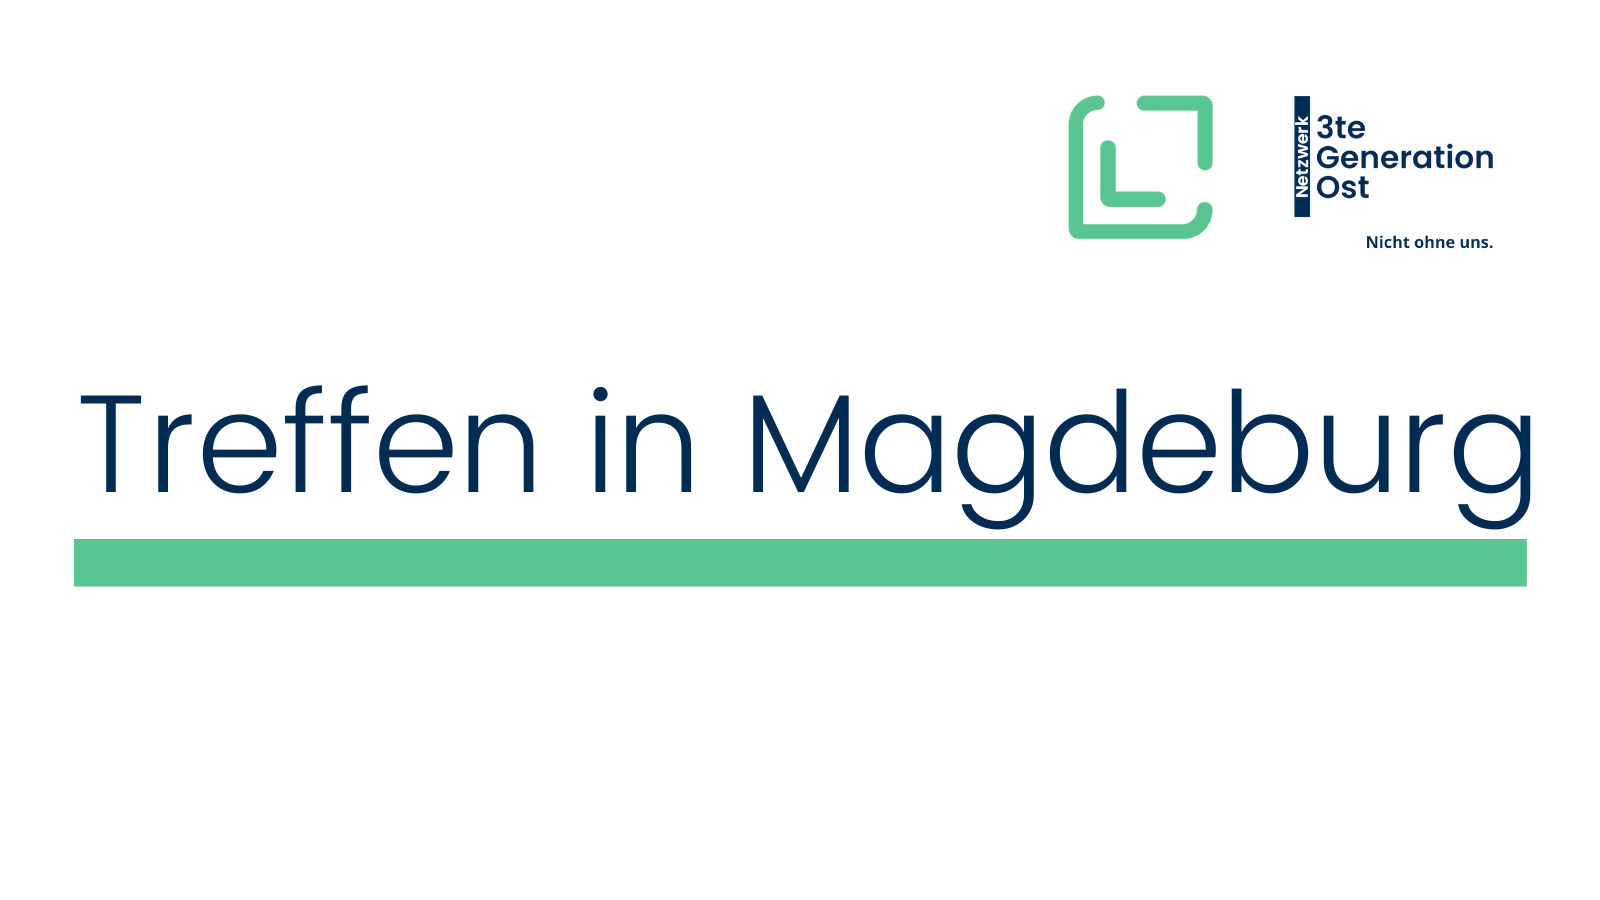 Logo der Veranstalter Legatum e.V. und Netzwerk 3te Generation Ost oben rechts. Mittig platziert in dunkelblau - Treffen in Magdeburg mit grünem Unterstrich